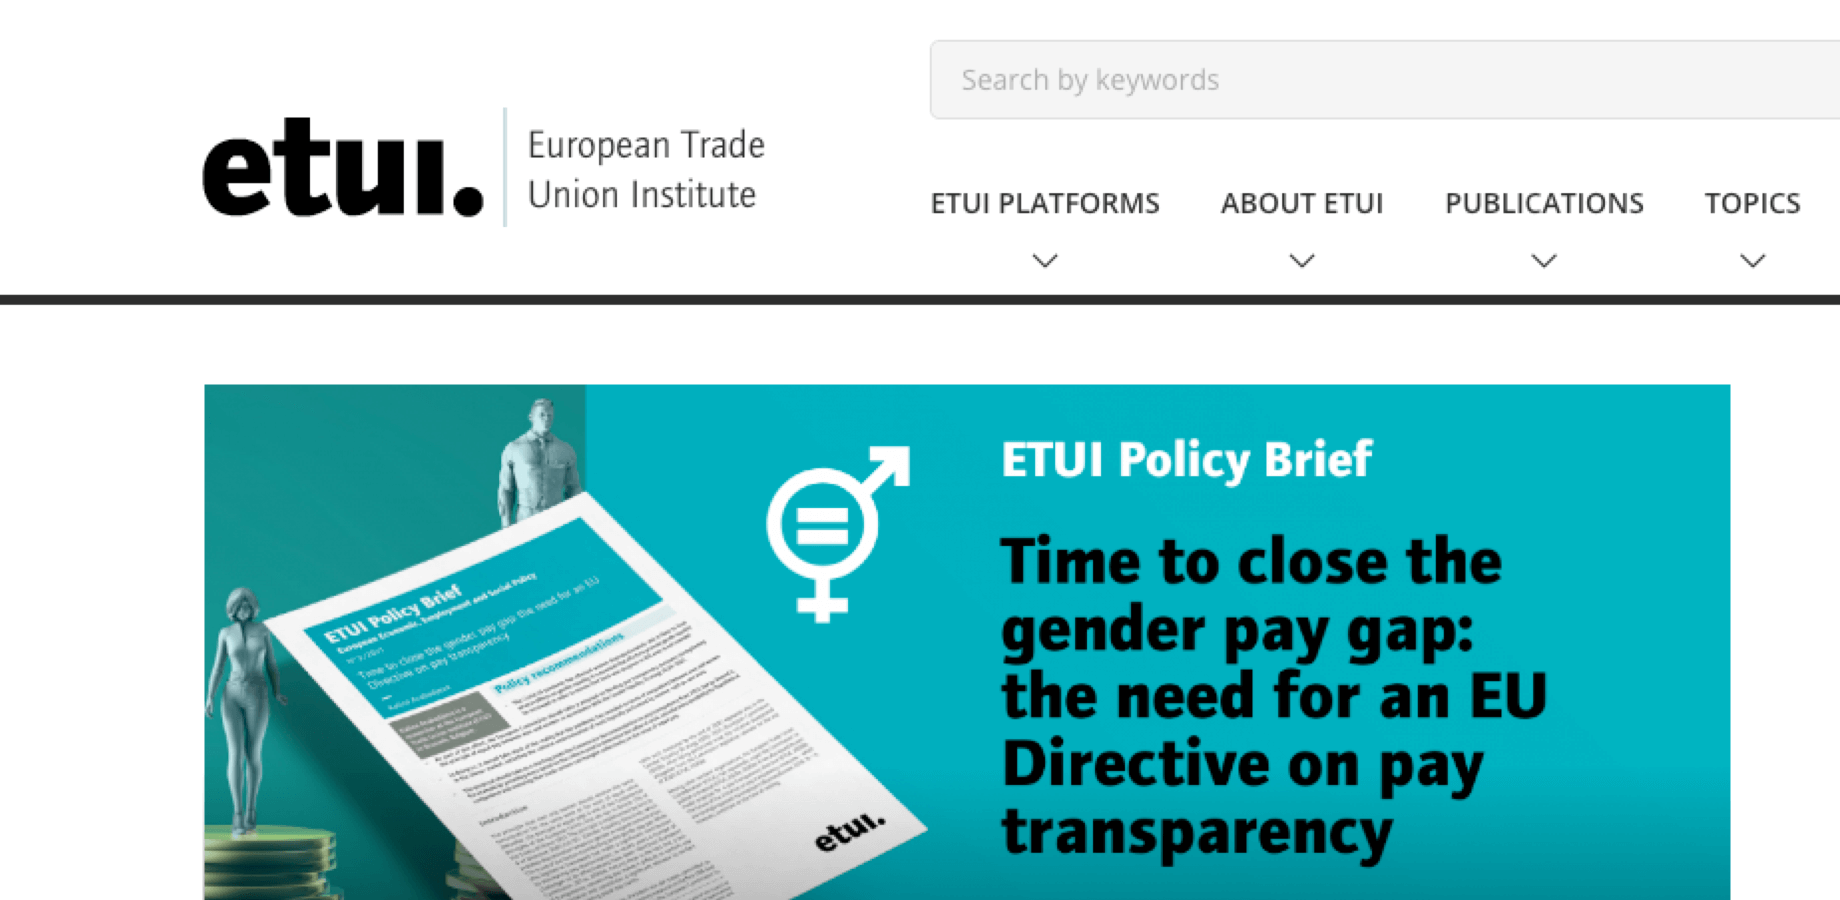 ETUI (European Trade Union Institute)